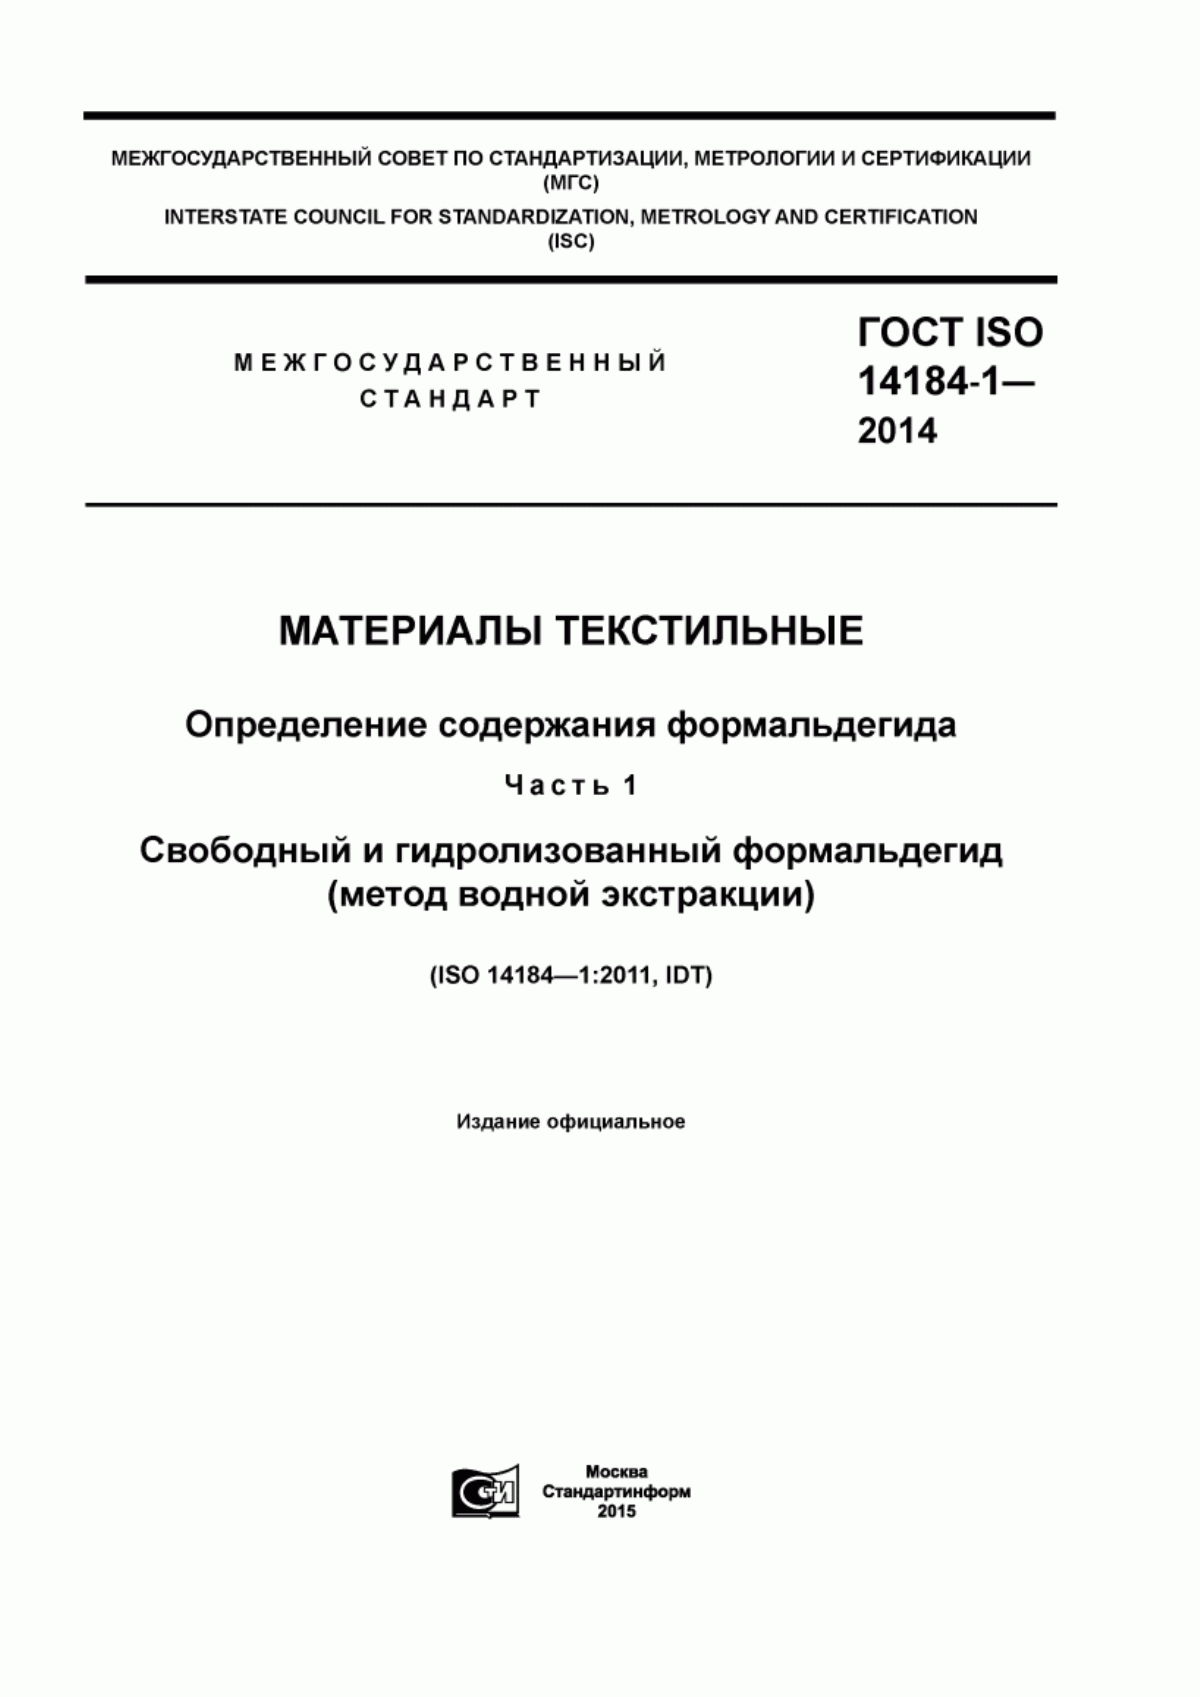 ГОСТ ISO 14184-1-2014 Материалы текстильные. Определение содержания формальдегида. Часть 1. Свободный и гидролизованный формальдегид (метод водной экстракции)